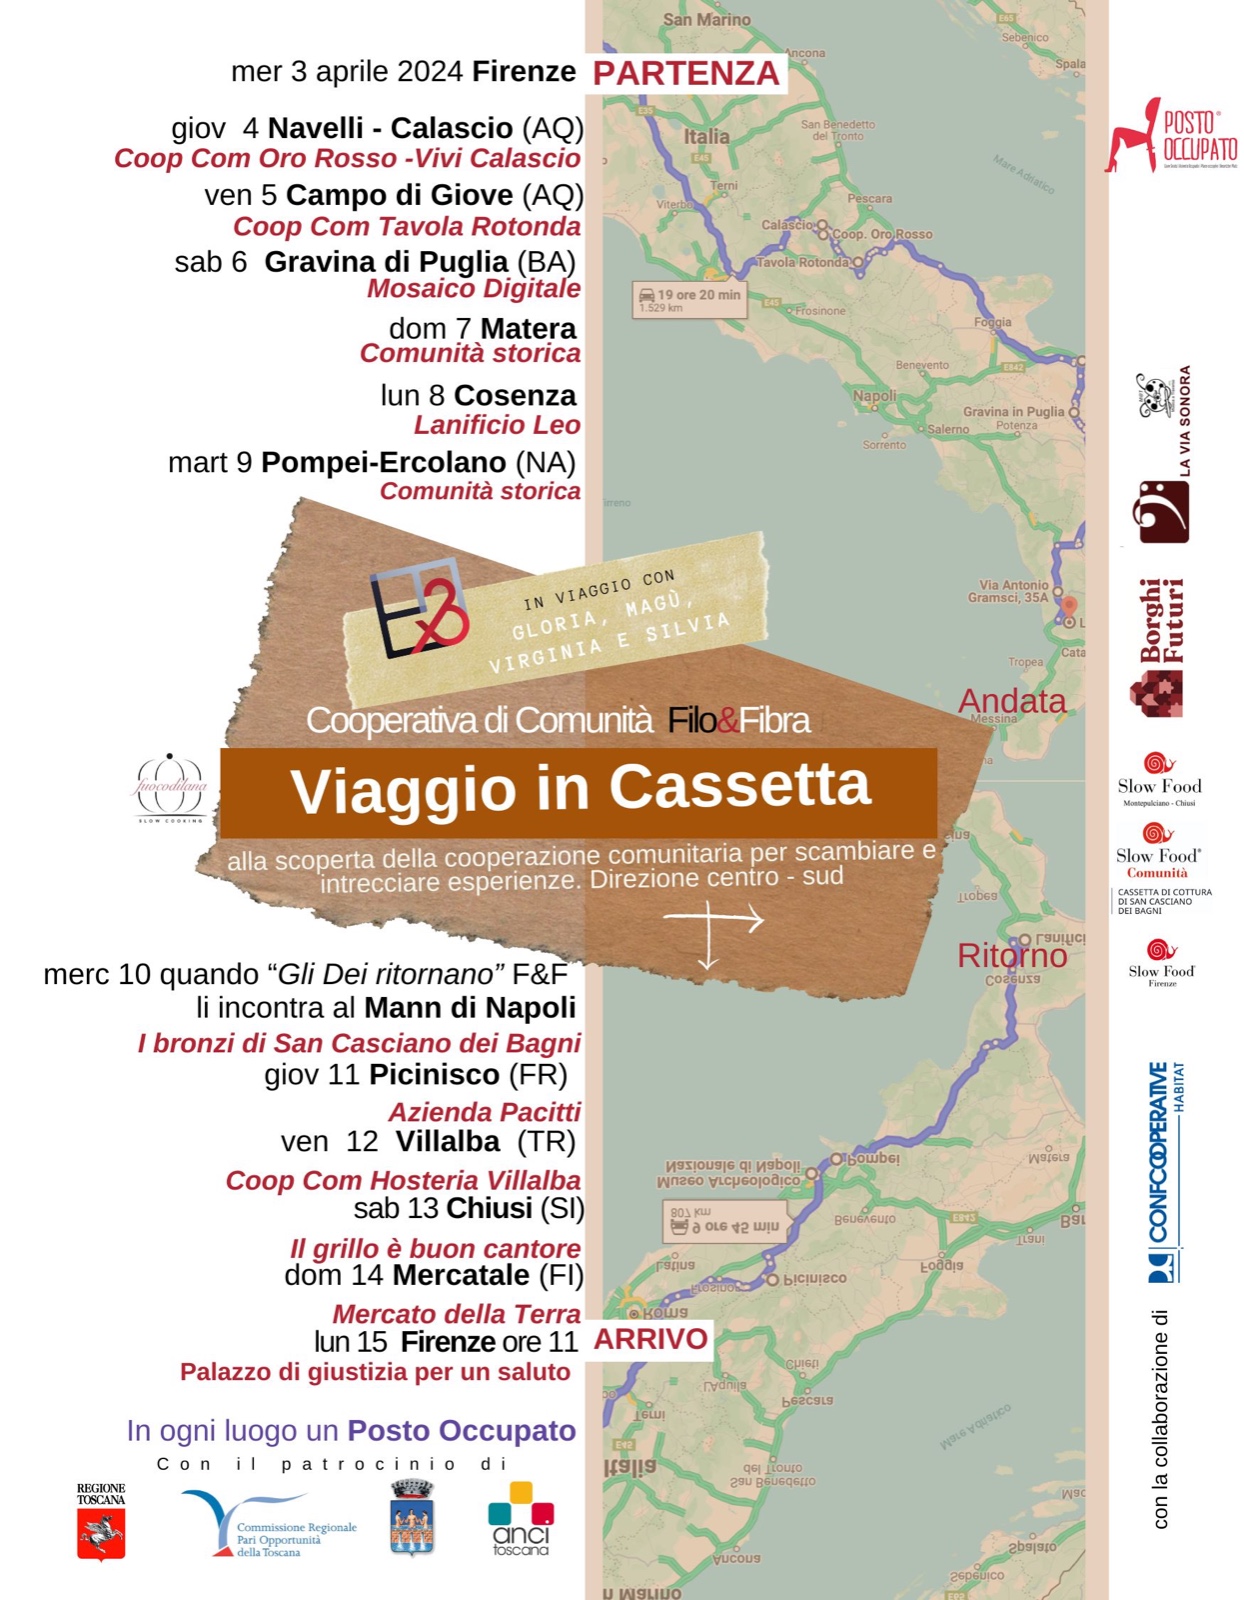 Viaggio in Cassetta - Alla scoperta della cooperazione comunitaria per scambiare e intrecciare esperienze. Direzione centro - sud